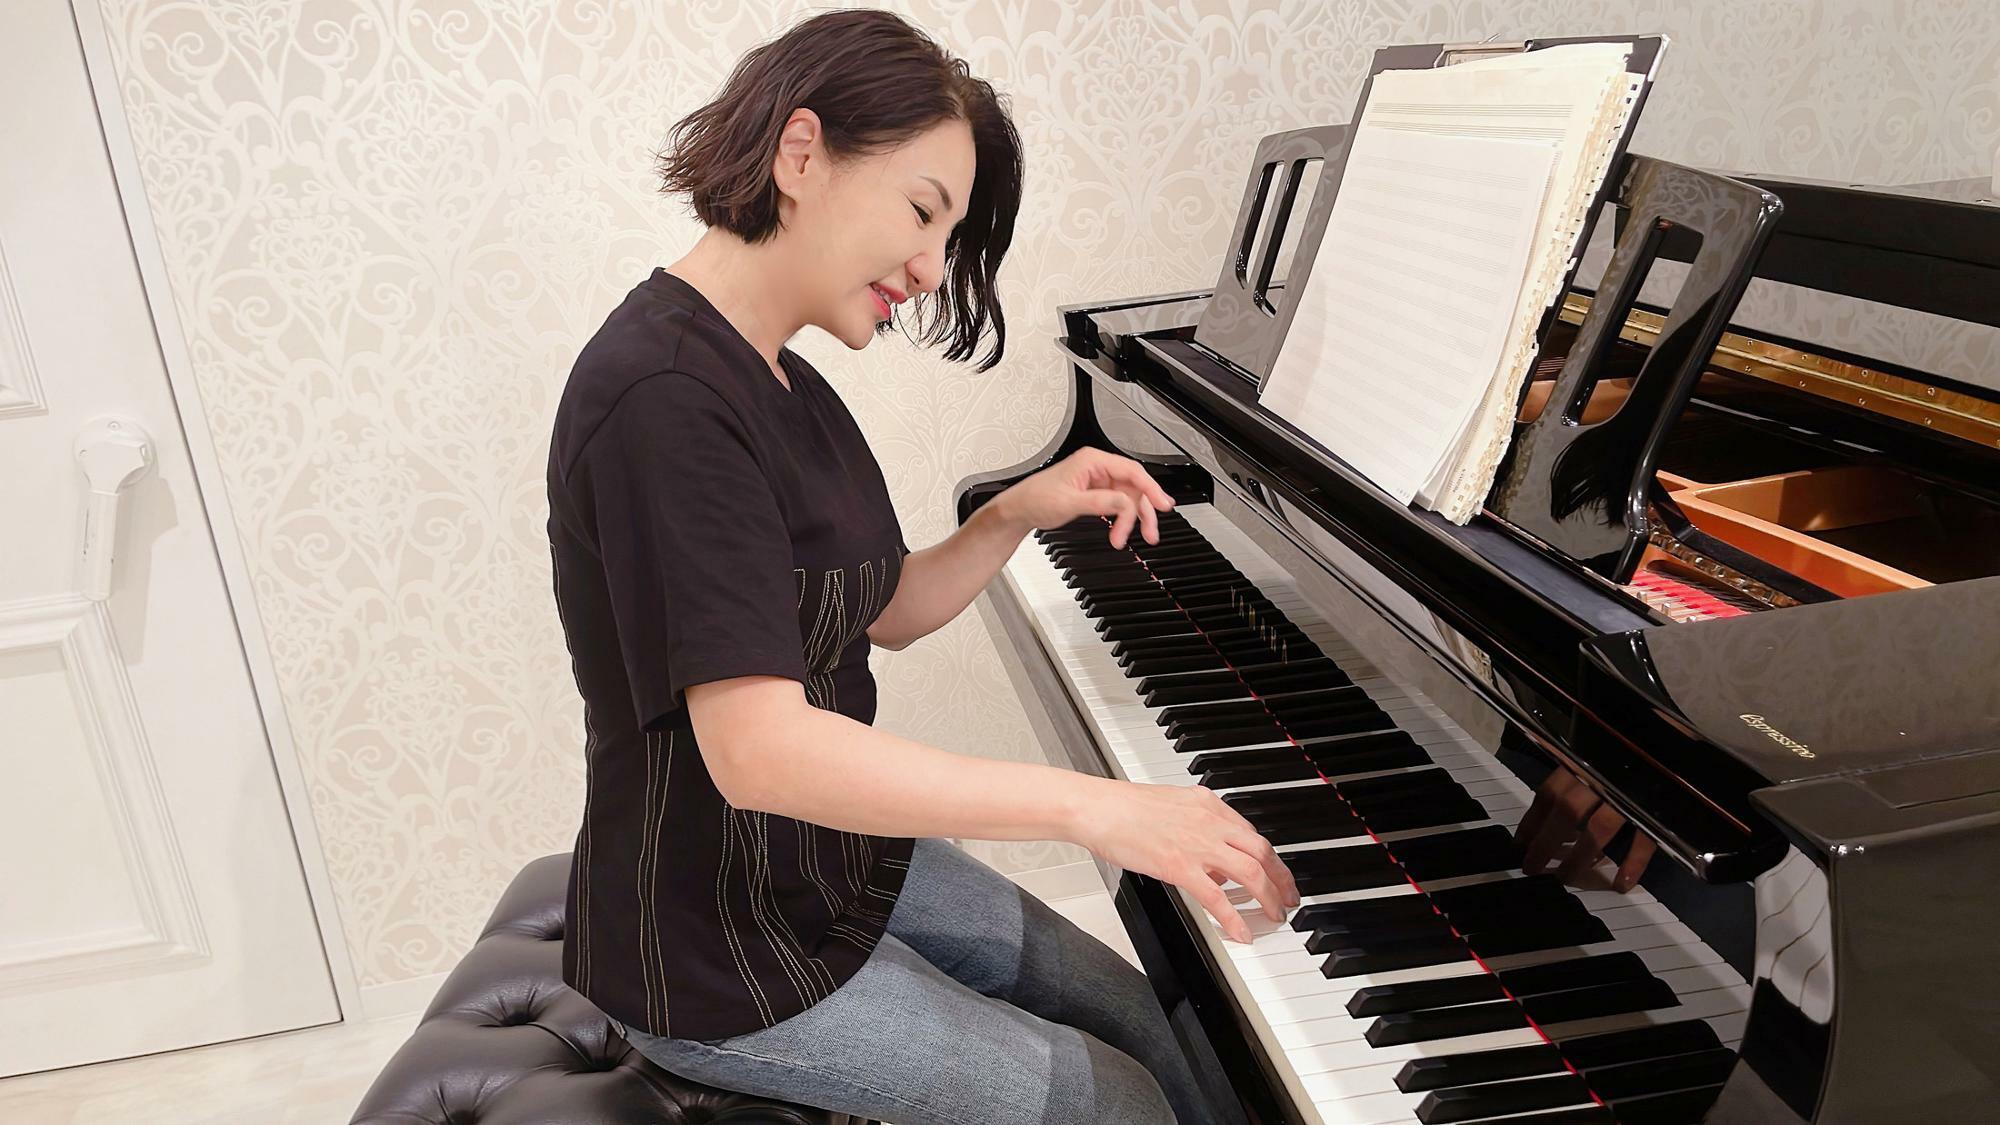 広瀬さんはいろんなシンガーだけでなく、数多くの方に歌を教えている